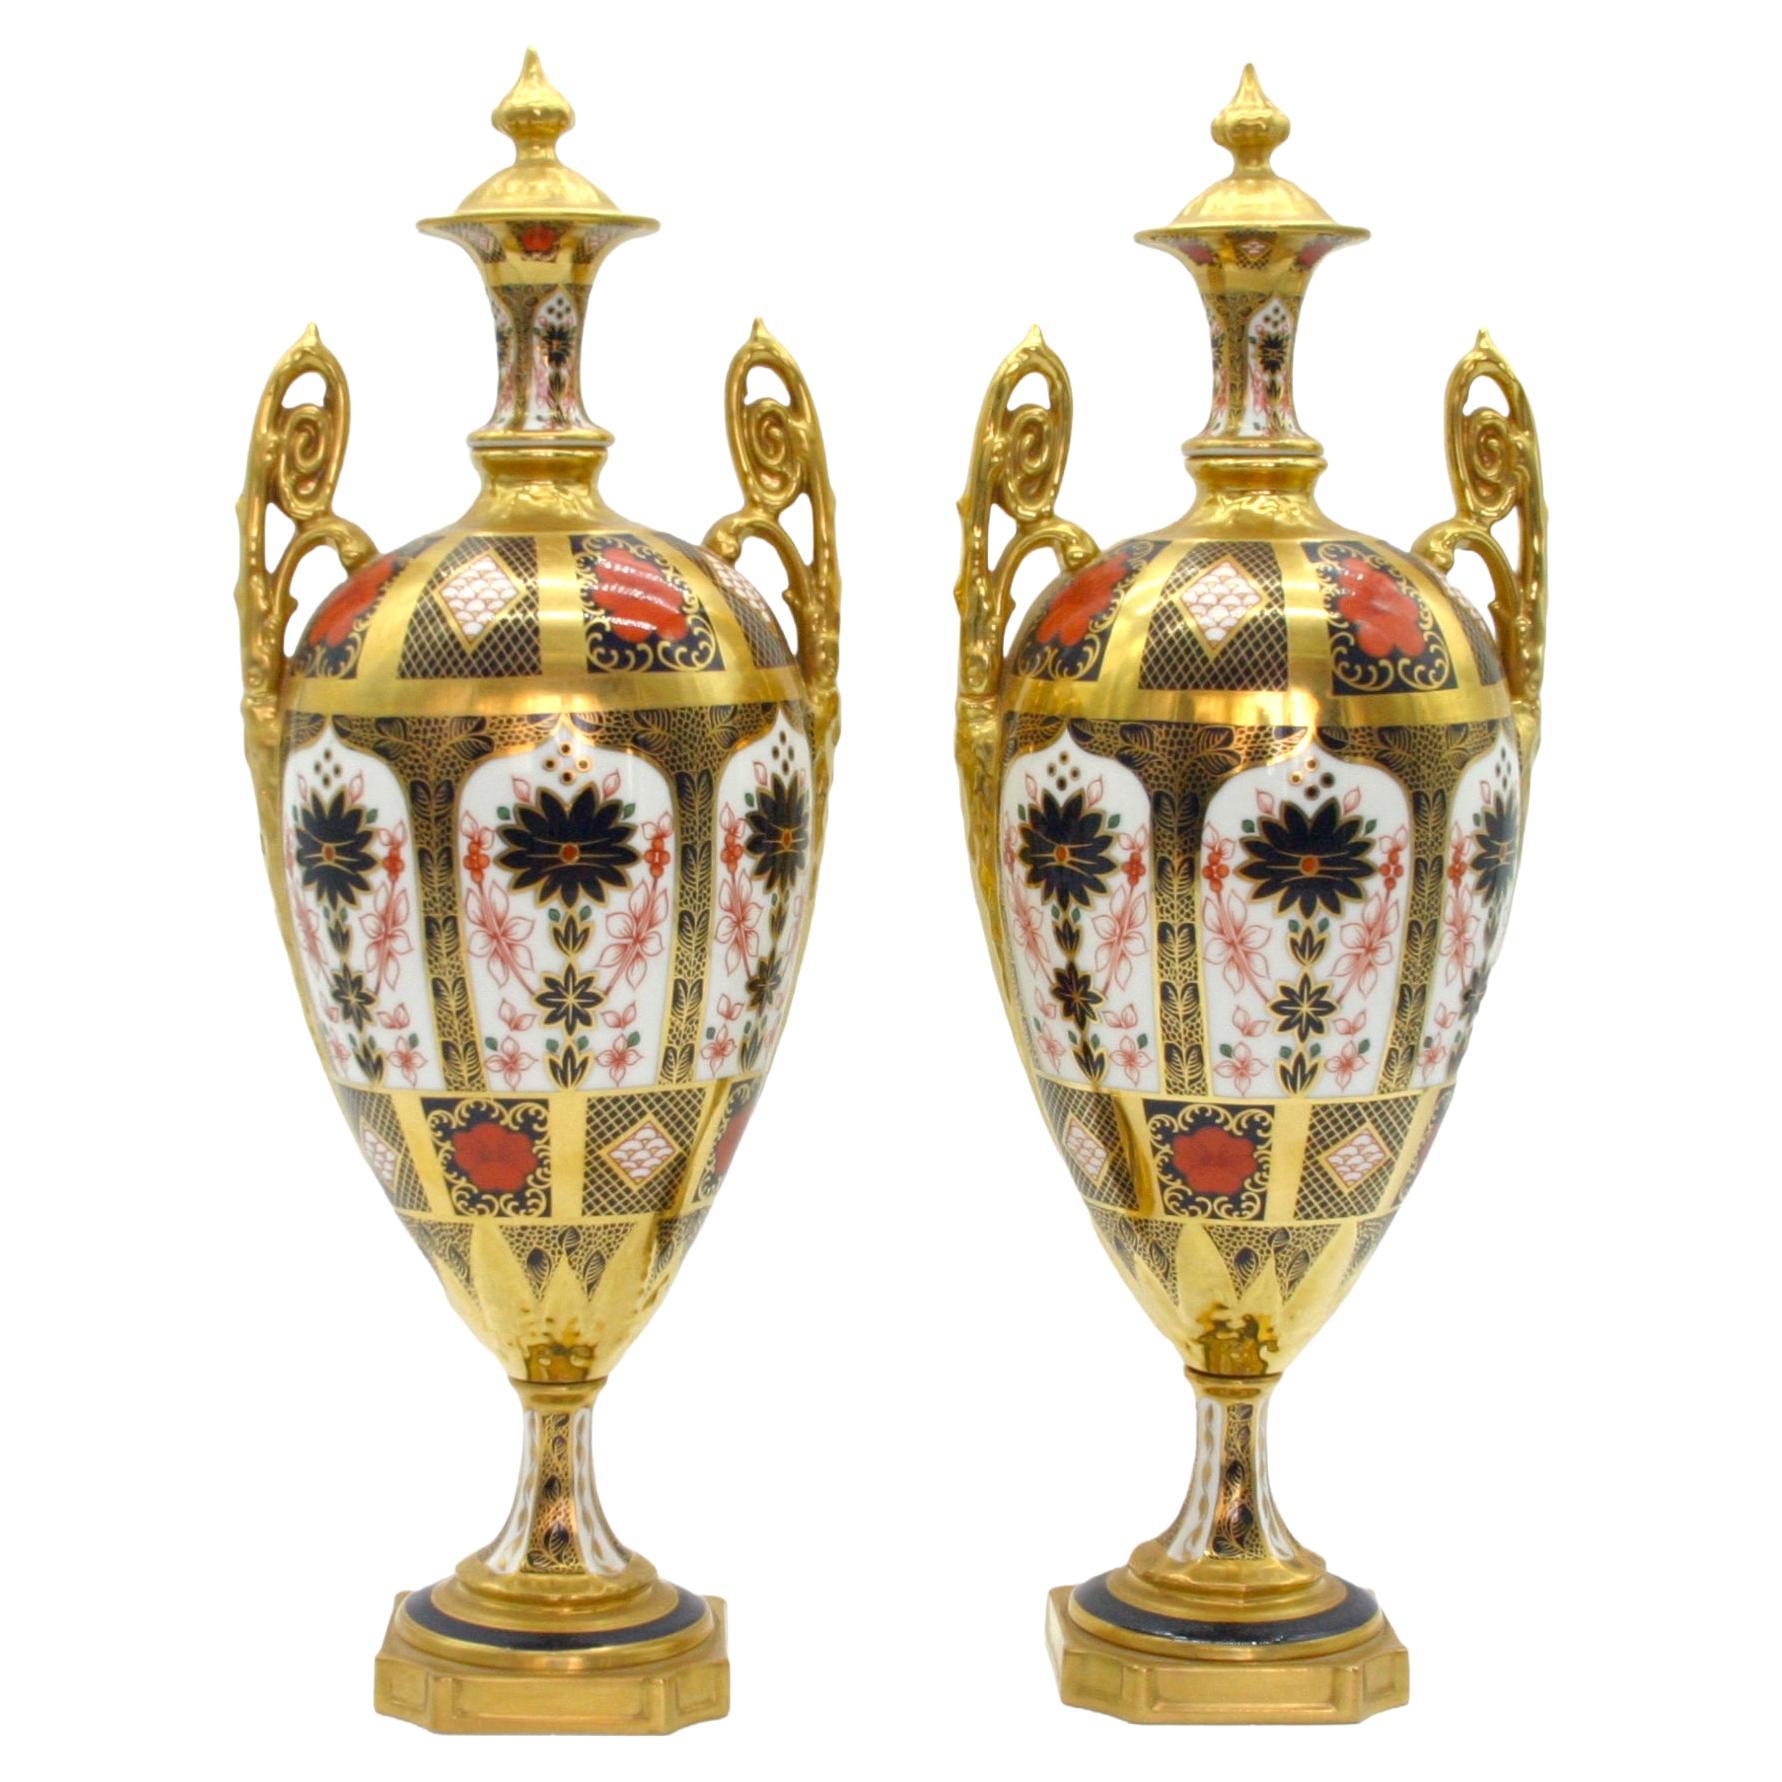 Englische vergoldete / bemalte Royal Crown Derby-Vasen/Urnen